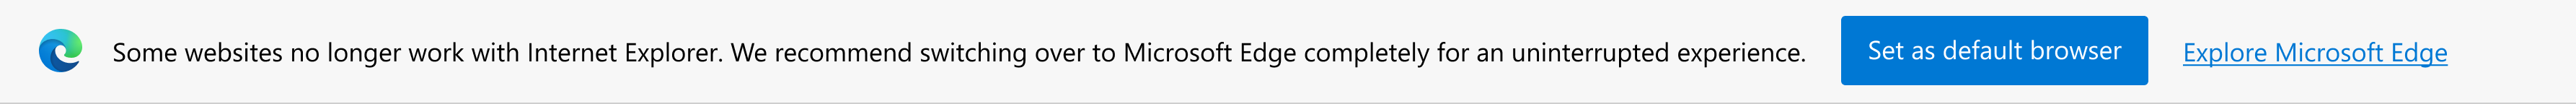 Notificação sobre sites modernos e prompt para definir o Microsoft Edge como navegador padrão ou explorar o Microsoft Edge